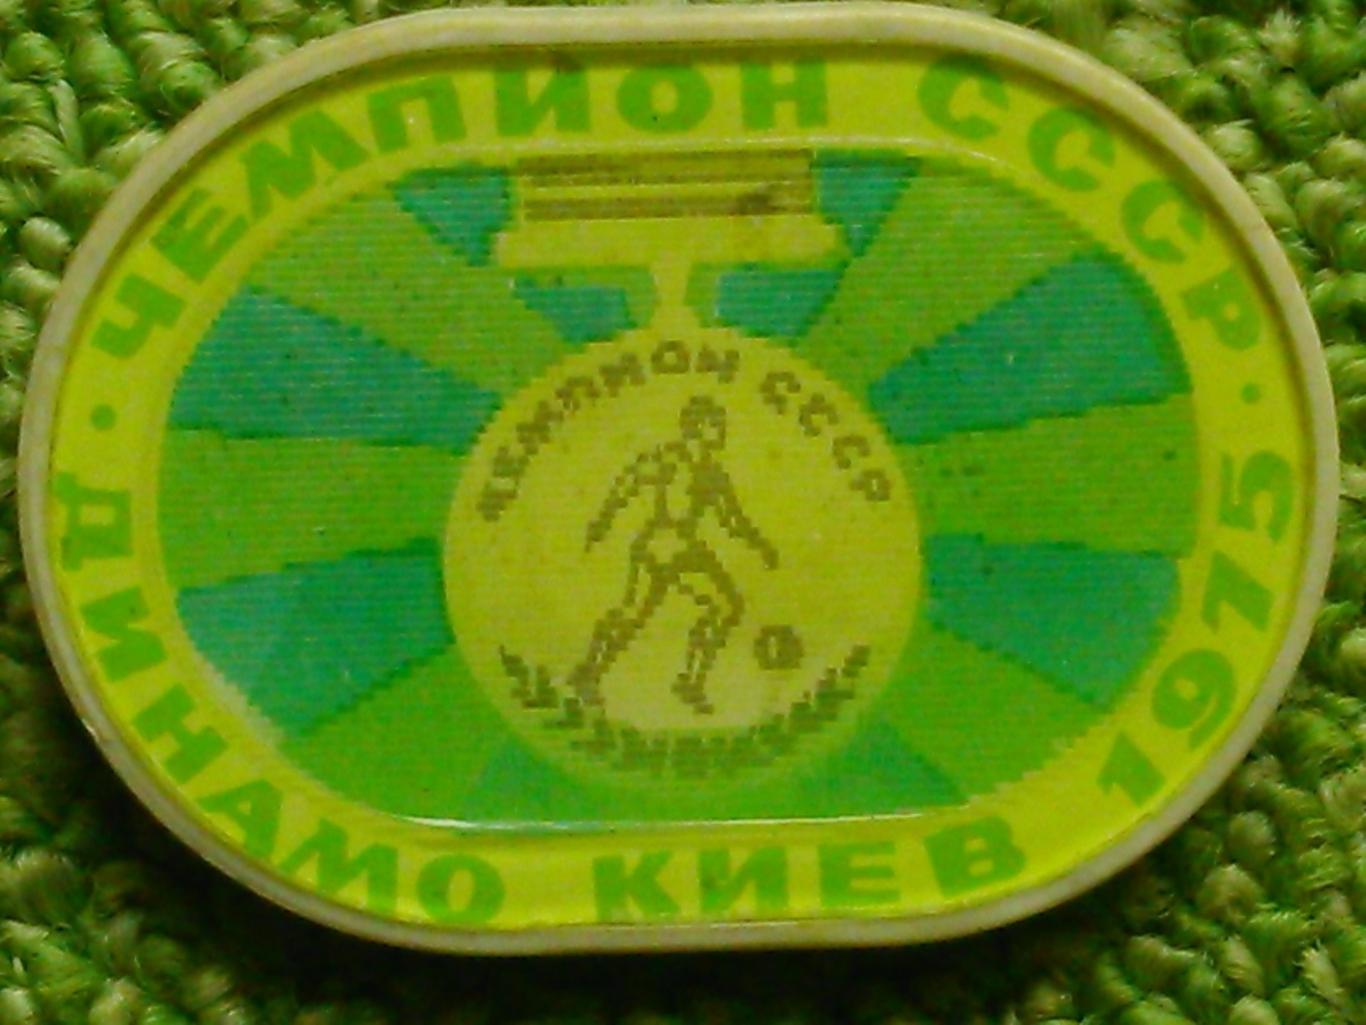 ДИНАМО Киев 1975. (переливной) № 278. Ukraine Footbal Badge. Оптом скидки 45%